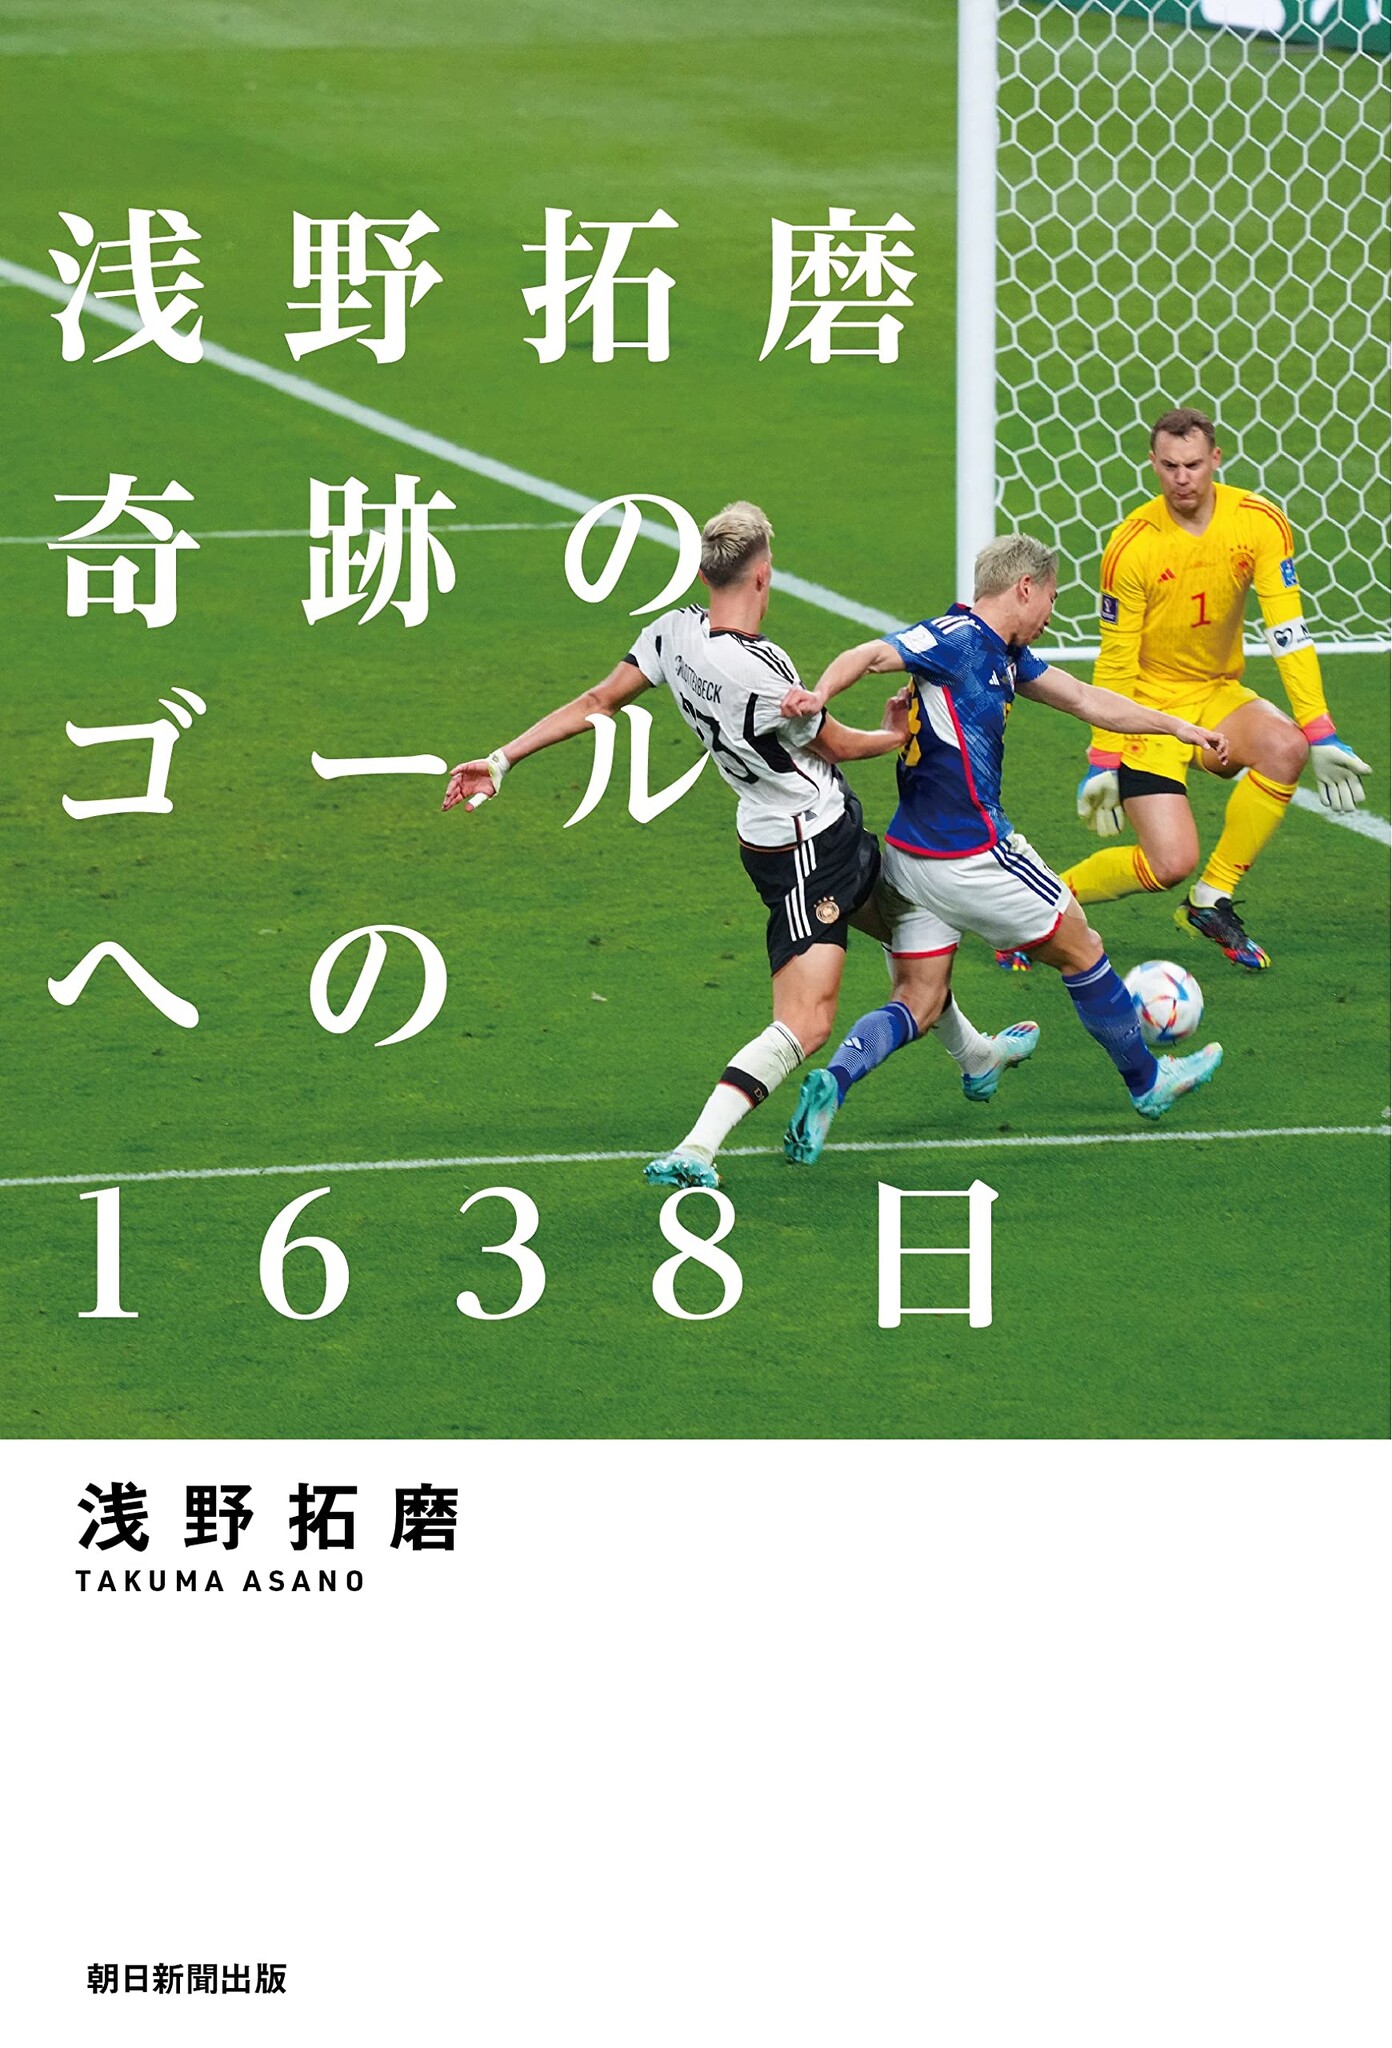 サッカー日本代表 浅野 拓磨 応援グッズ - フットサル